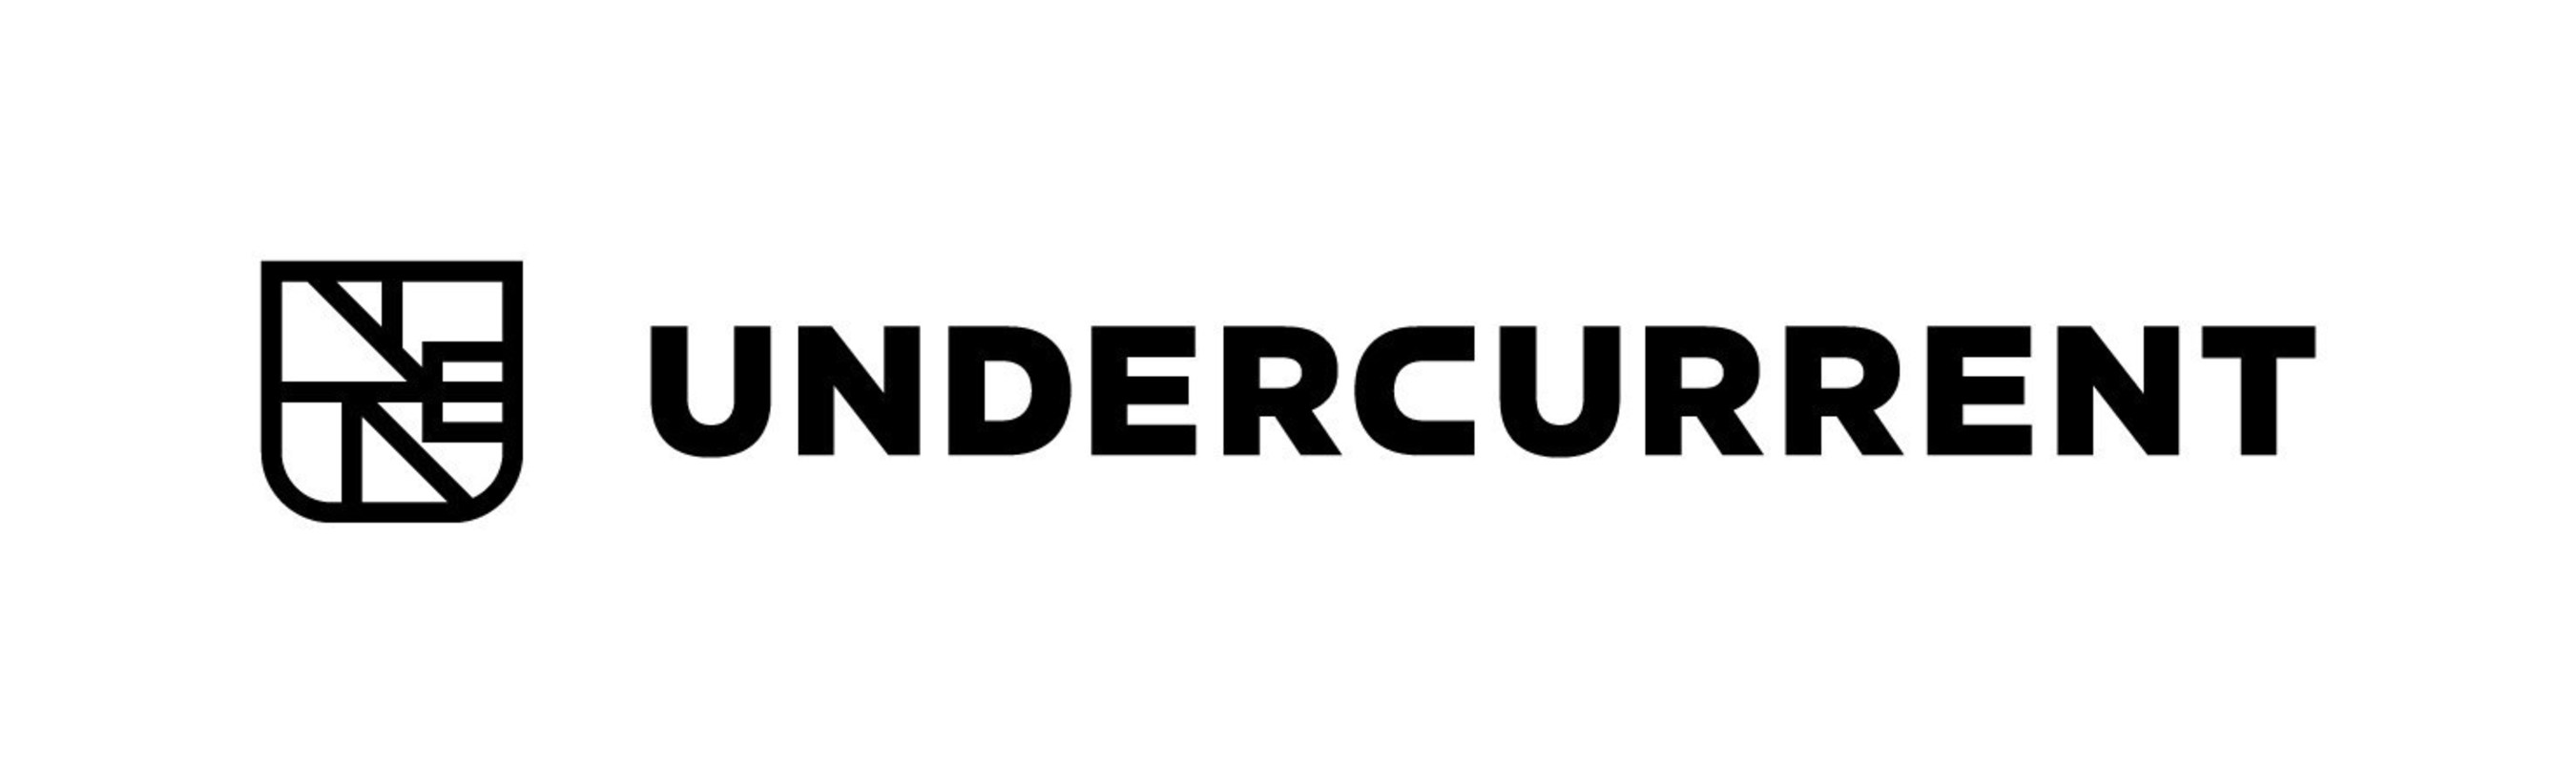 Undercurrent logo.